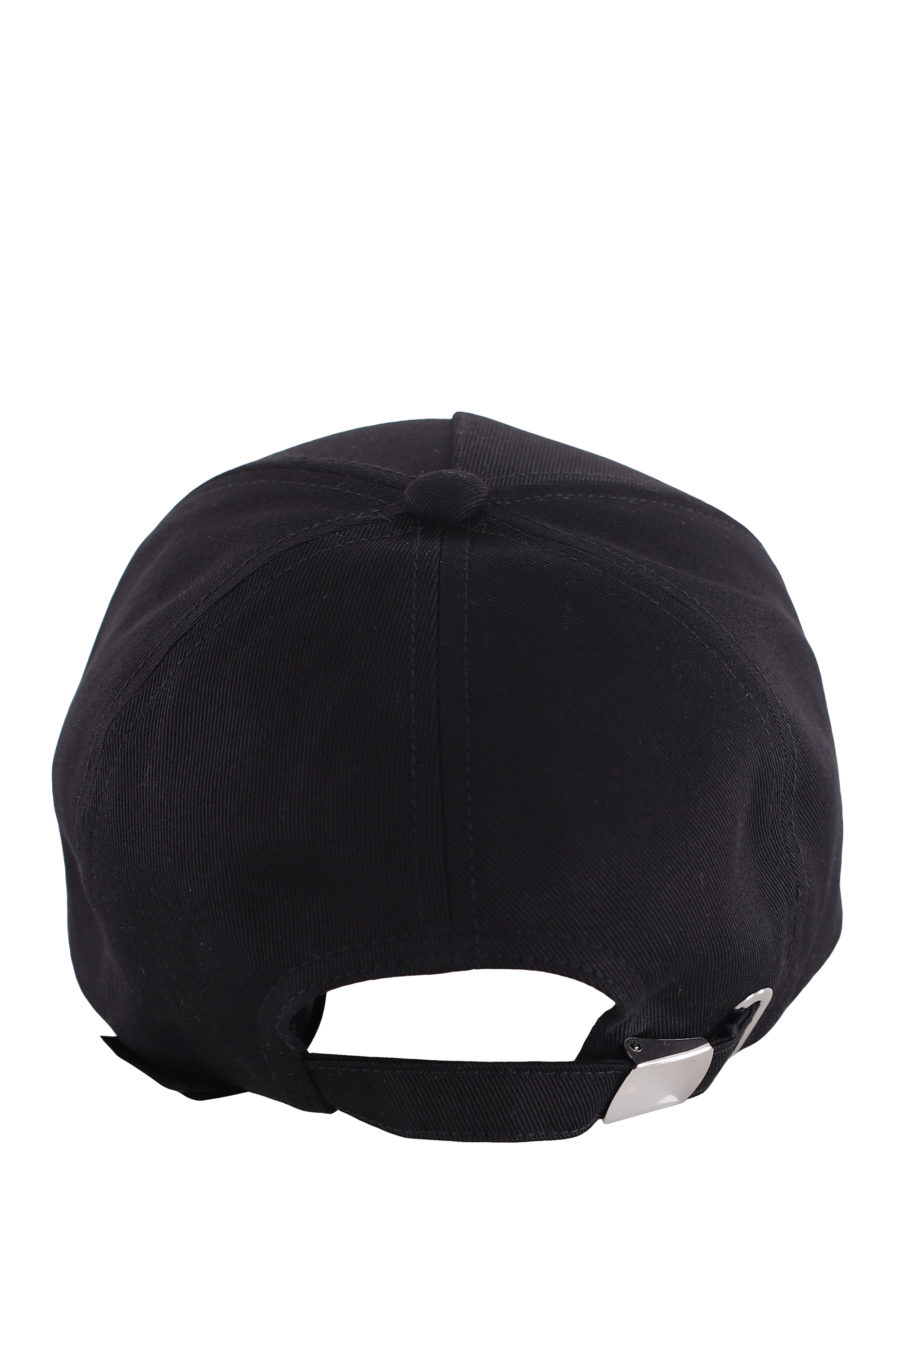 Gorra negra con logotipo bordado - IMG 7260